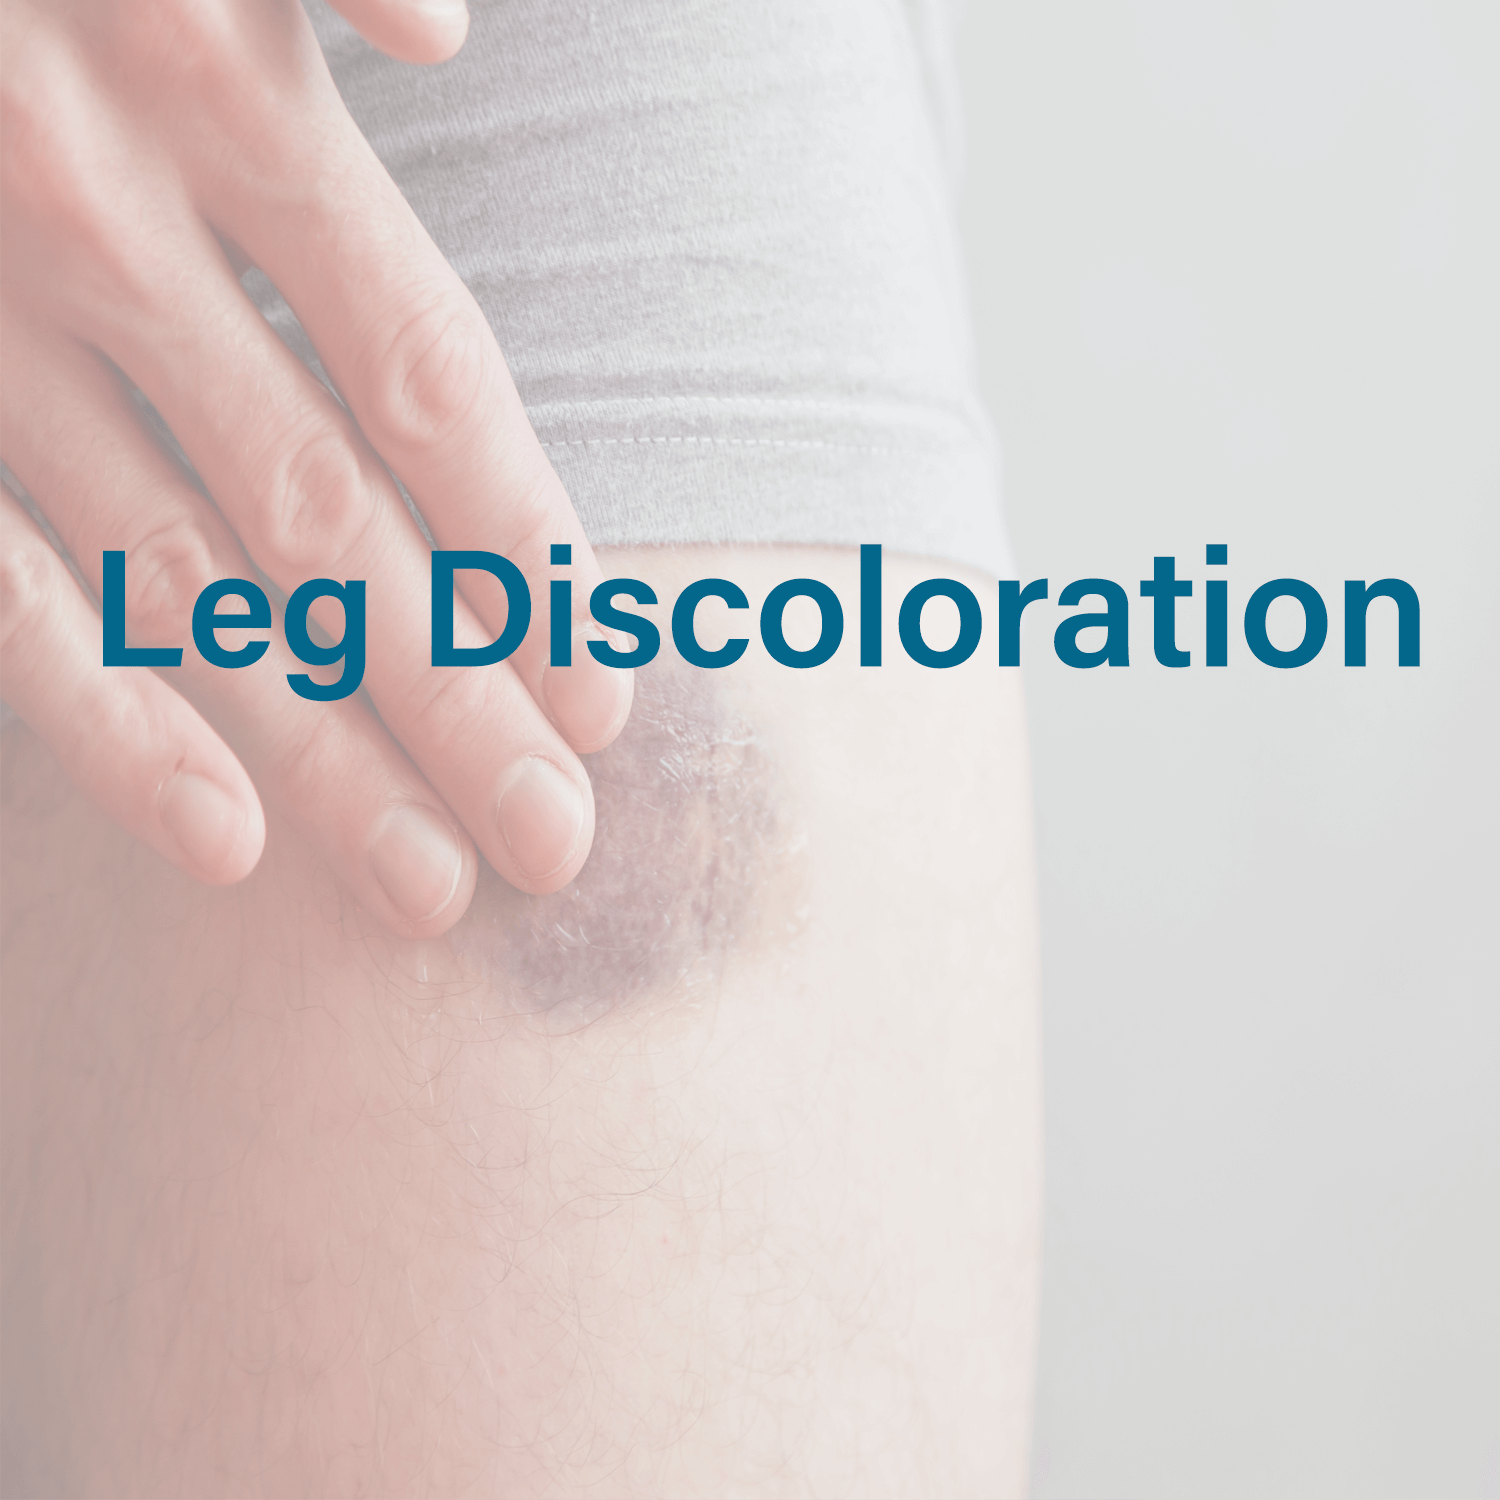 Leg Discoloration